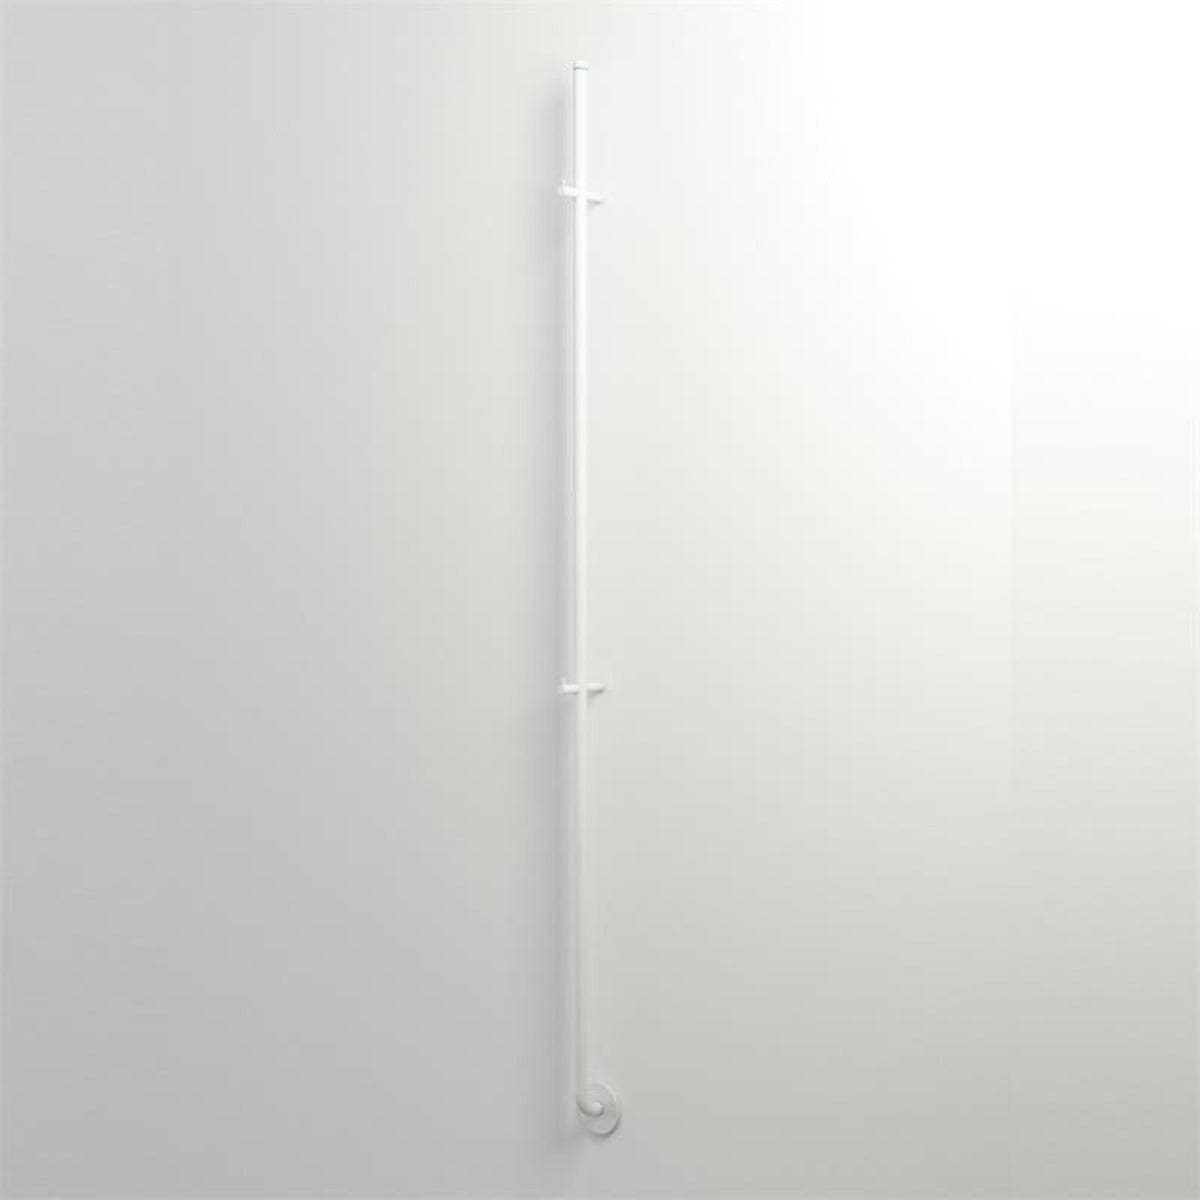 INR Iconic Nordic Rooms Line Håndkletørker H175cm Hvit Matt Håndkletørker strøm